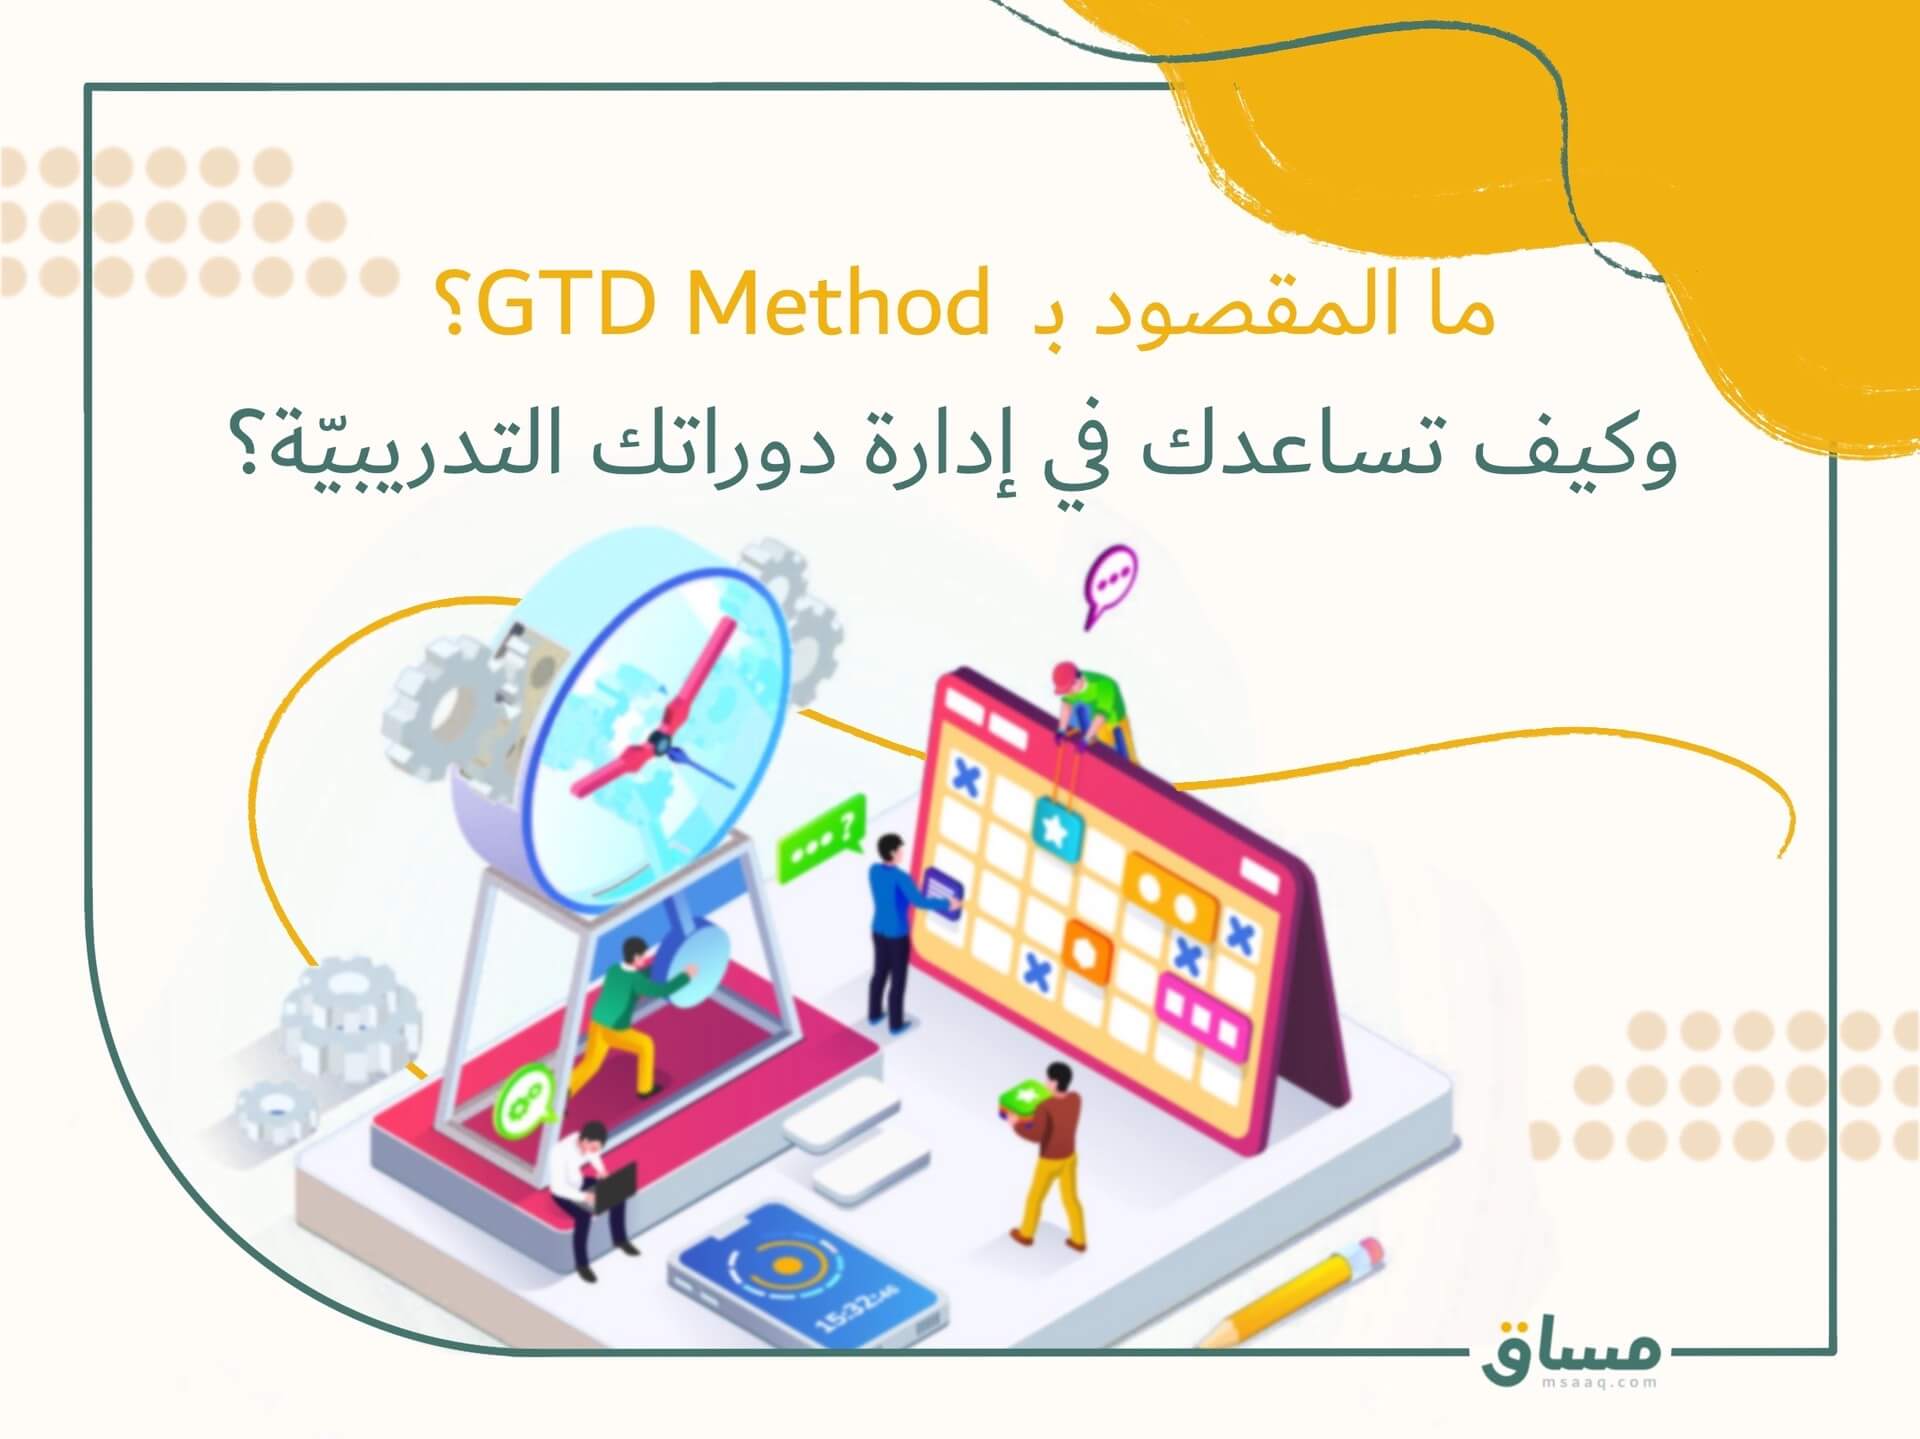 GTD method